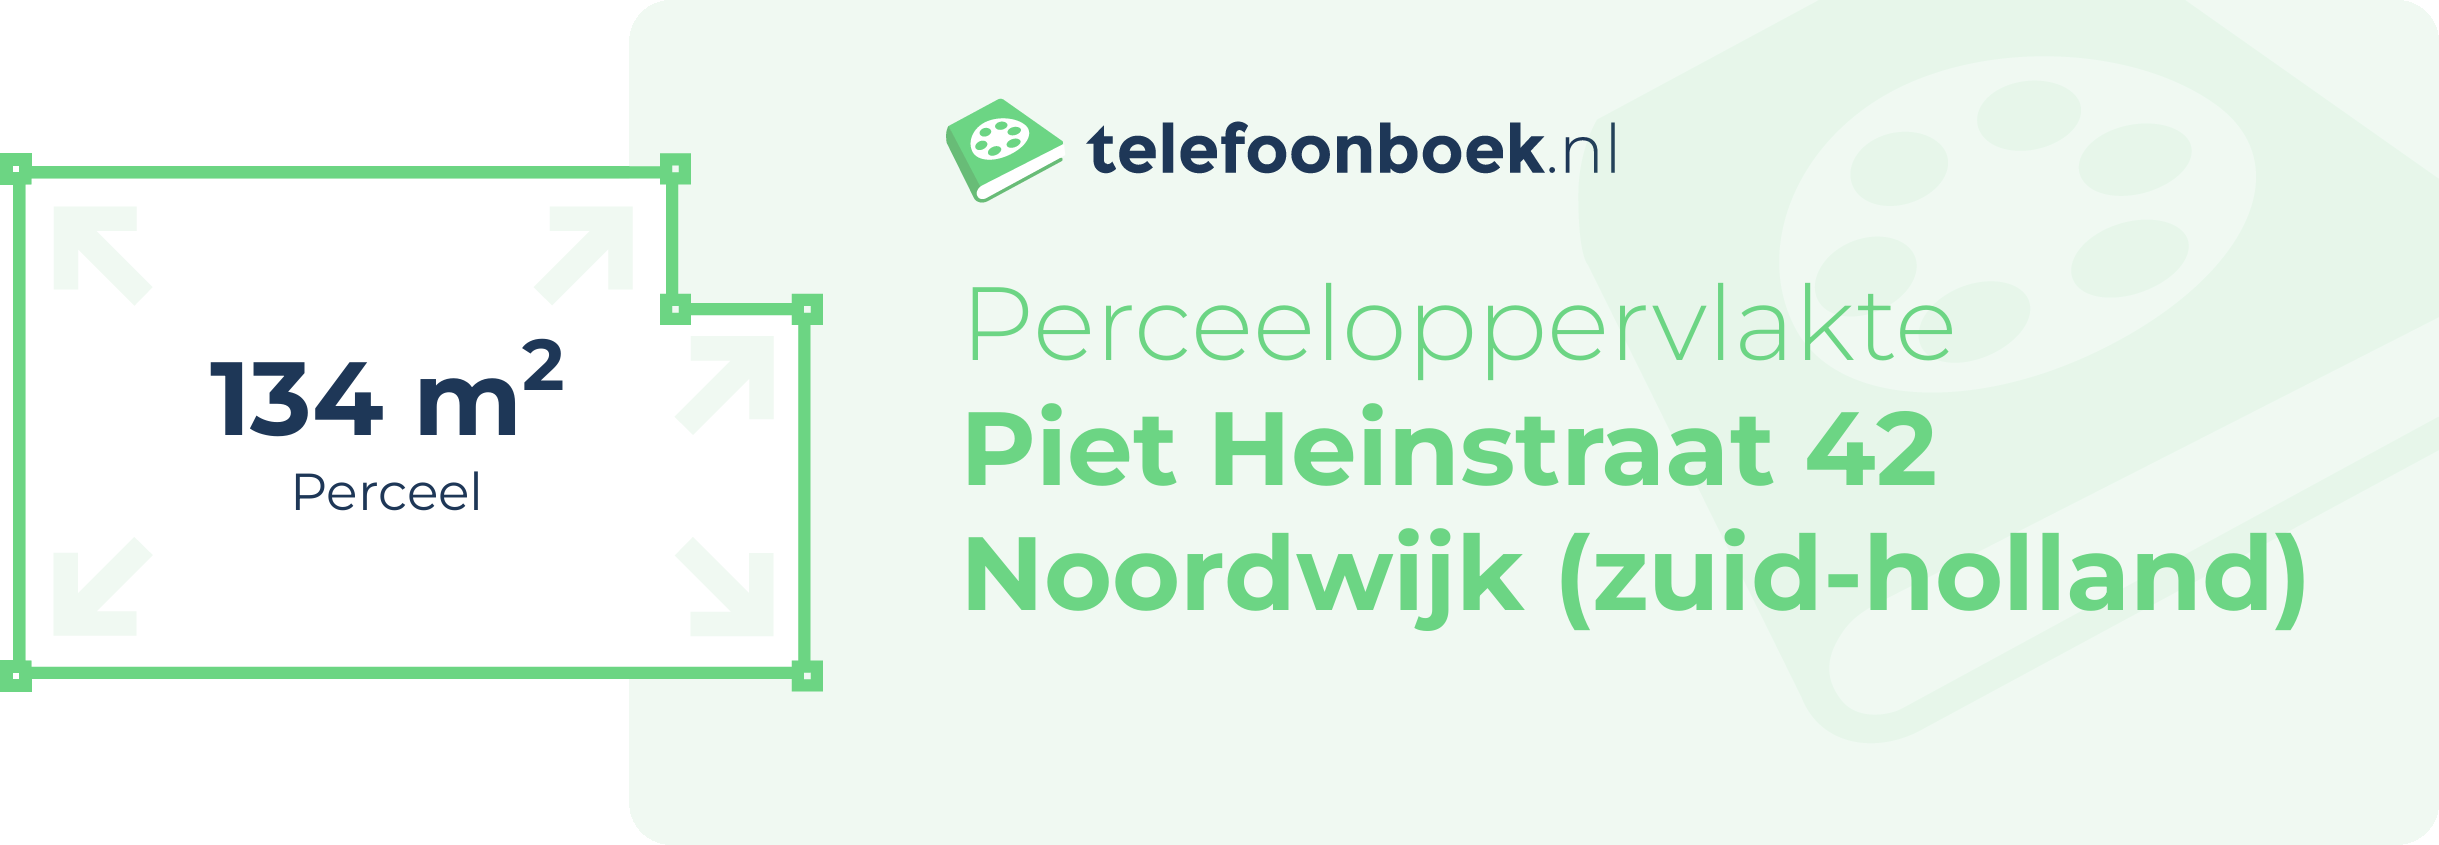 Perceeloppervlakte Piet Heinstraat 42 Noordwijk (Zuid-Holland)